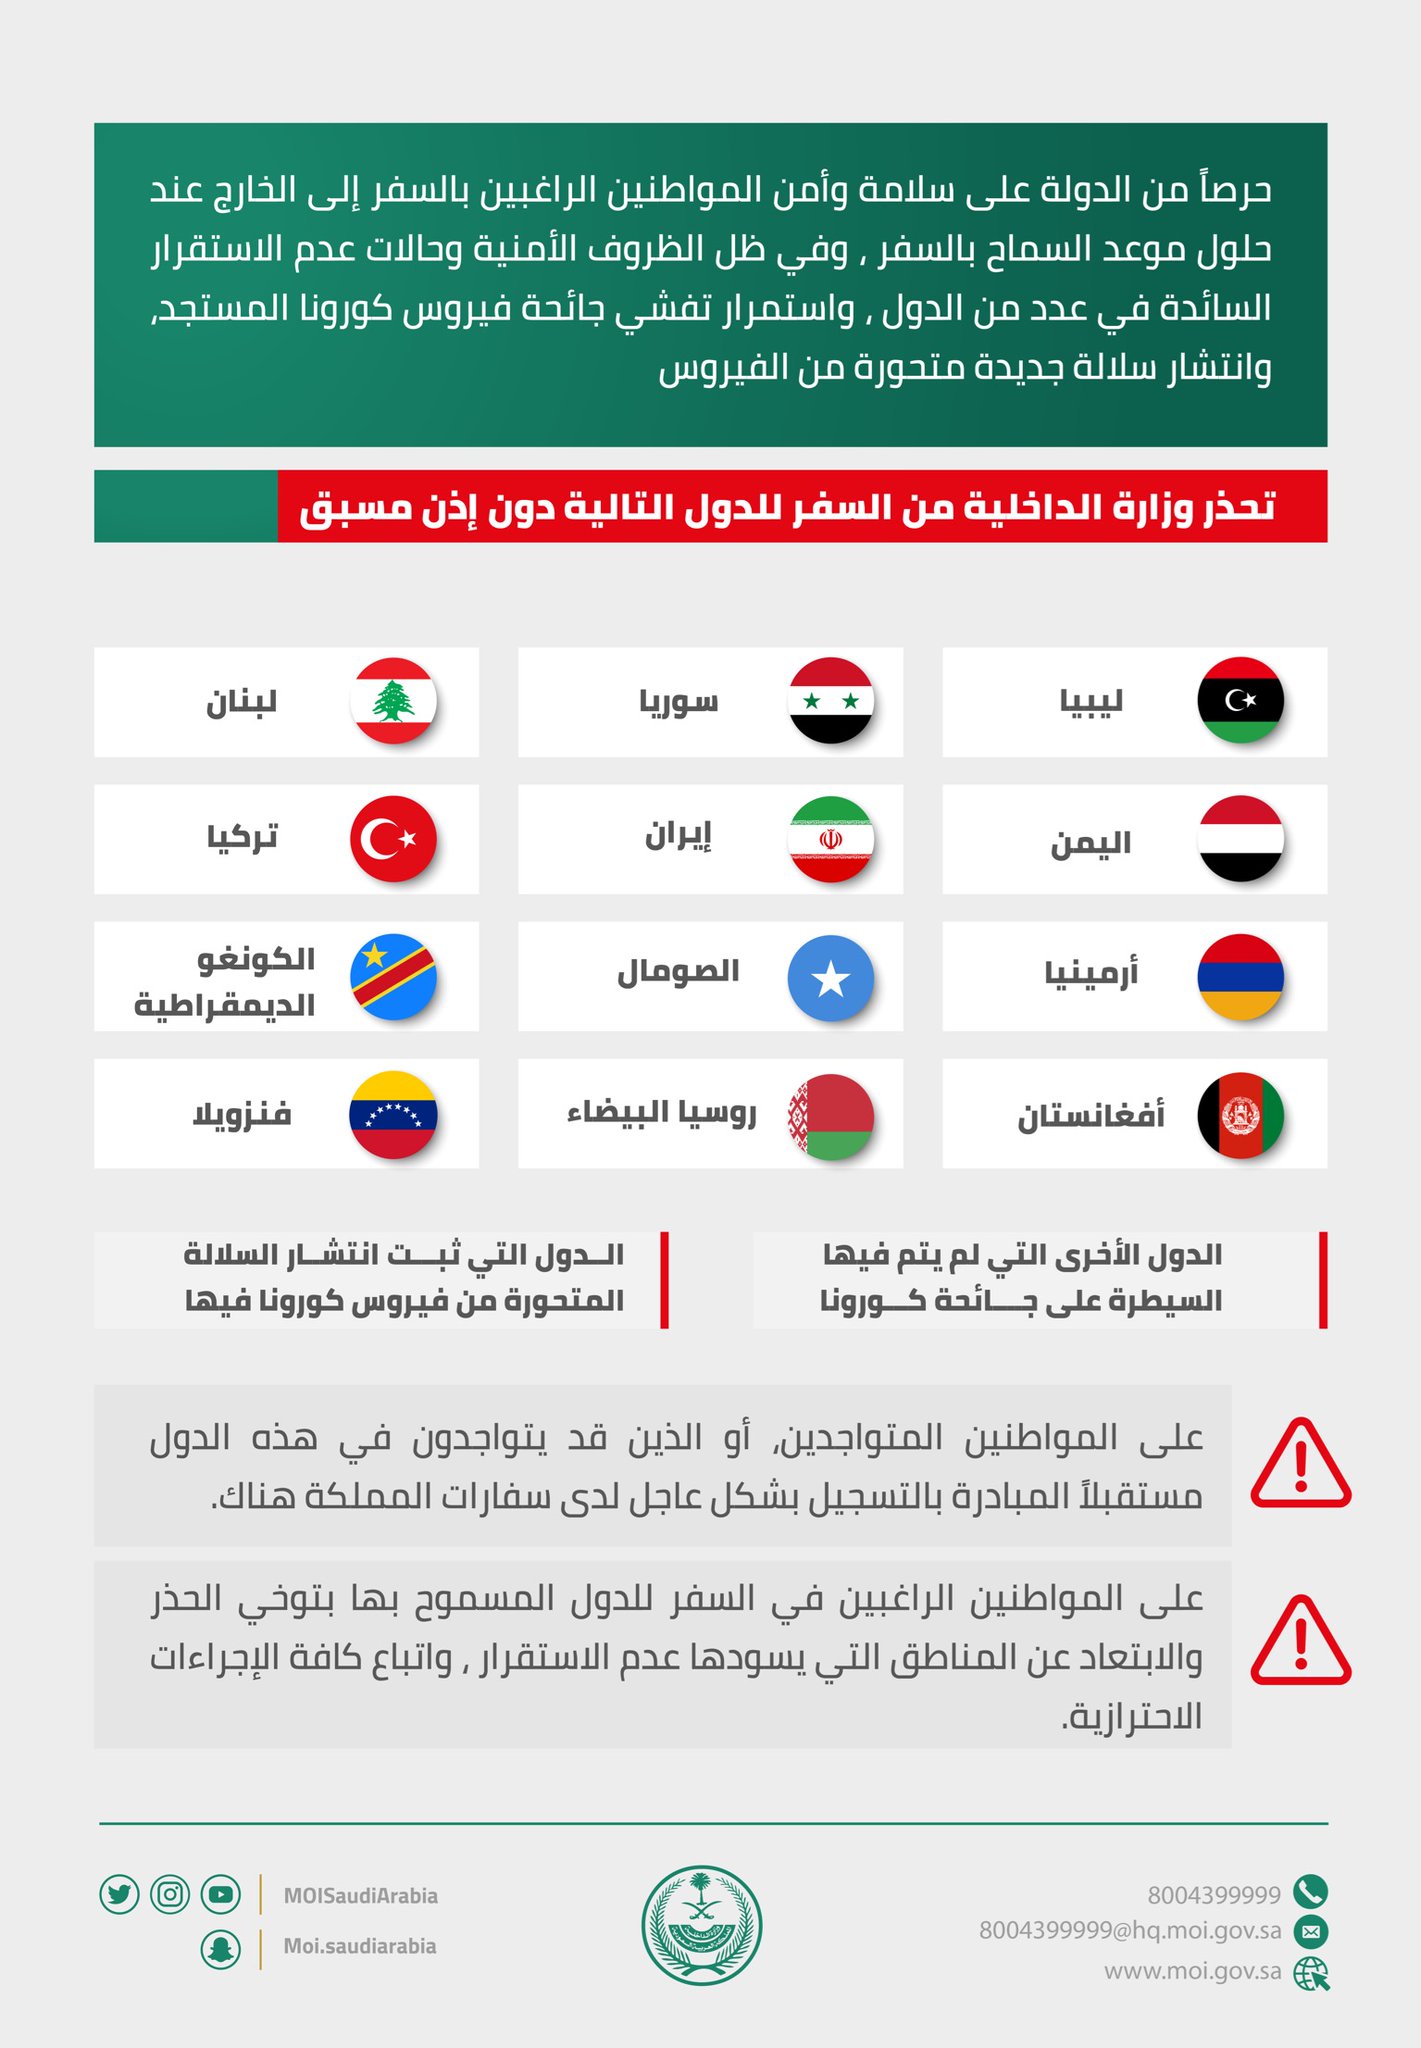 وزارة الداخلية السعودية تحذر من السفر إلي الدول المحظورة وأسماء تلك الدول المحظورة